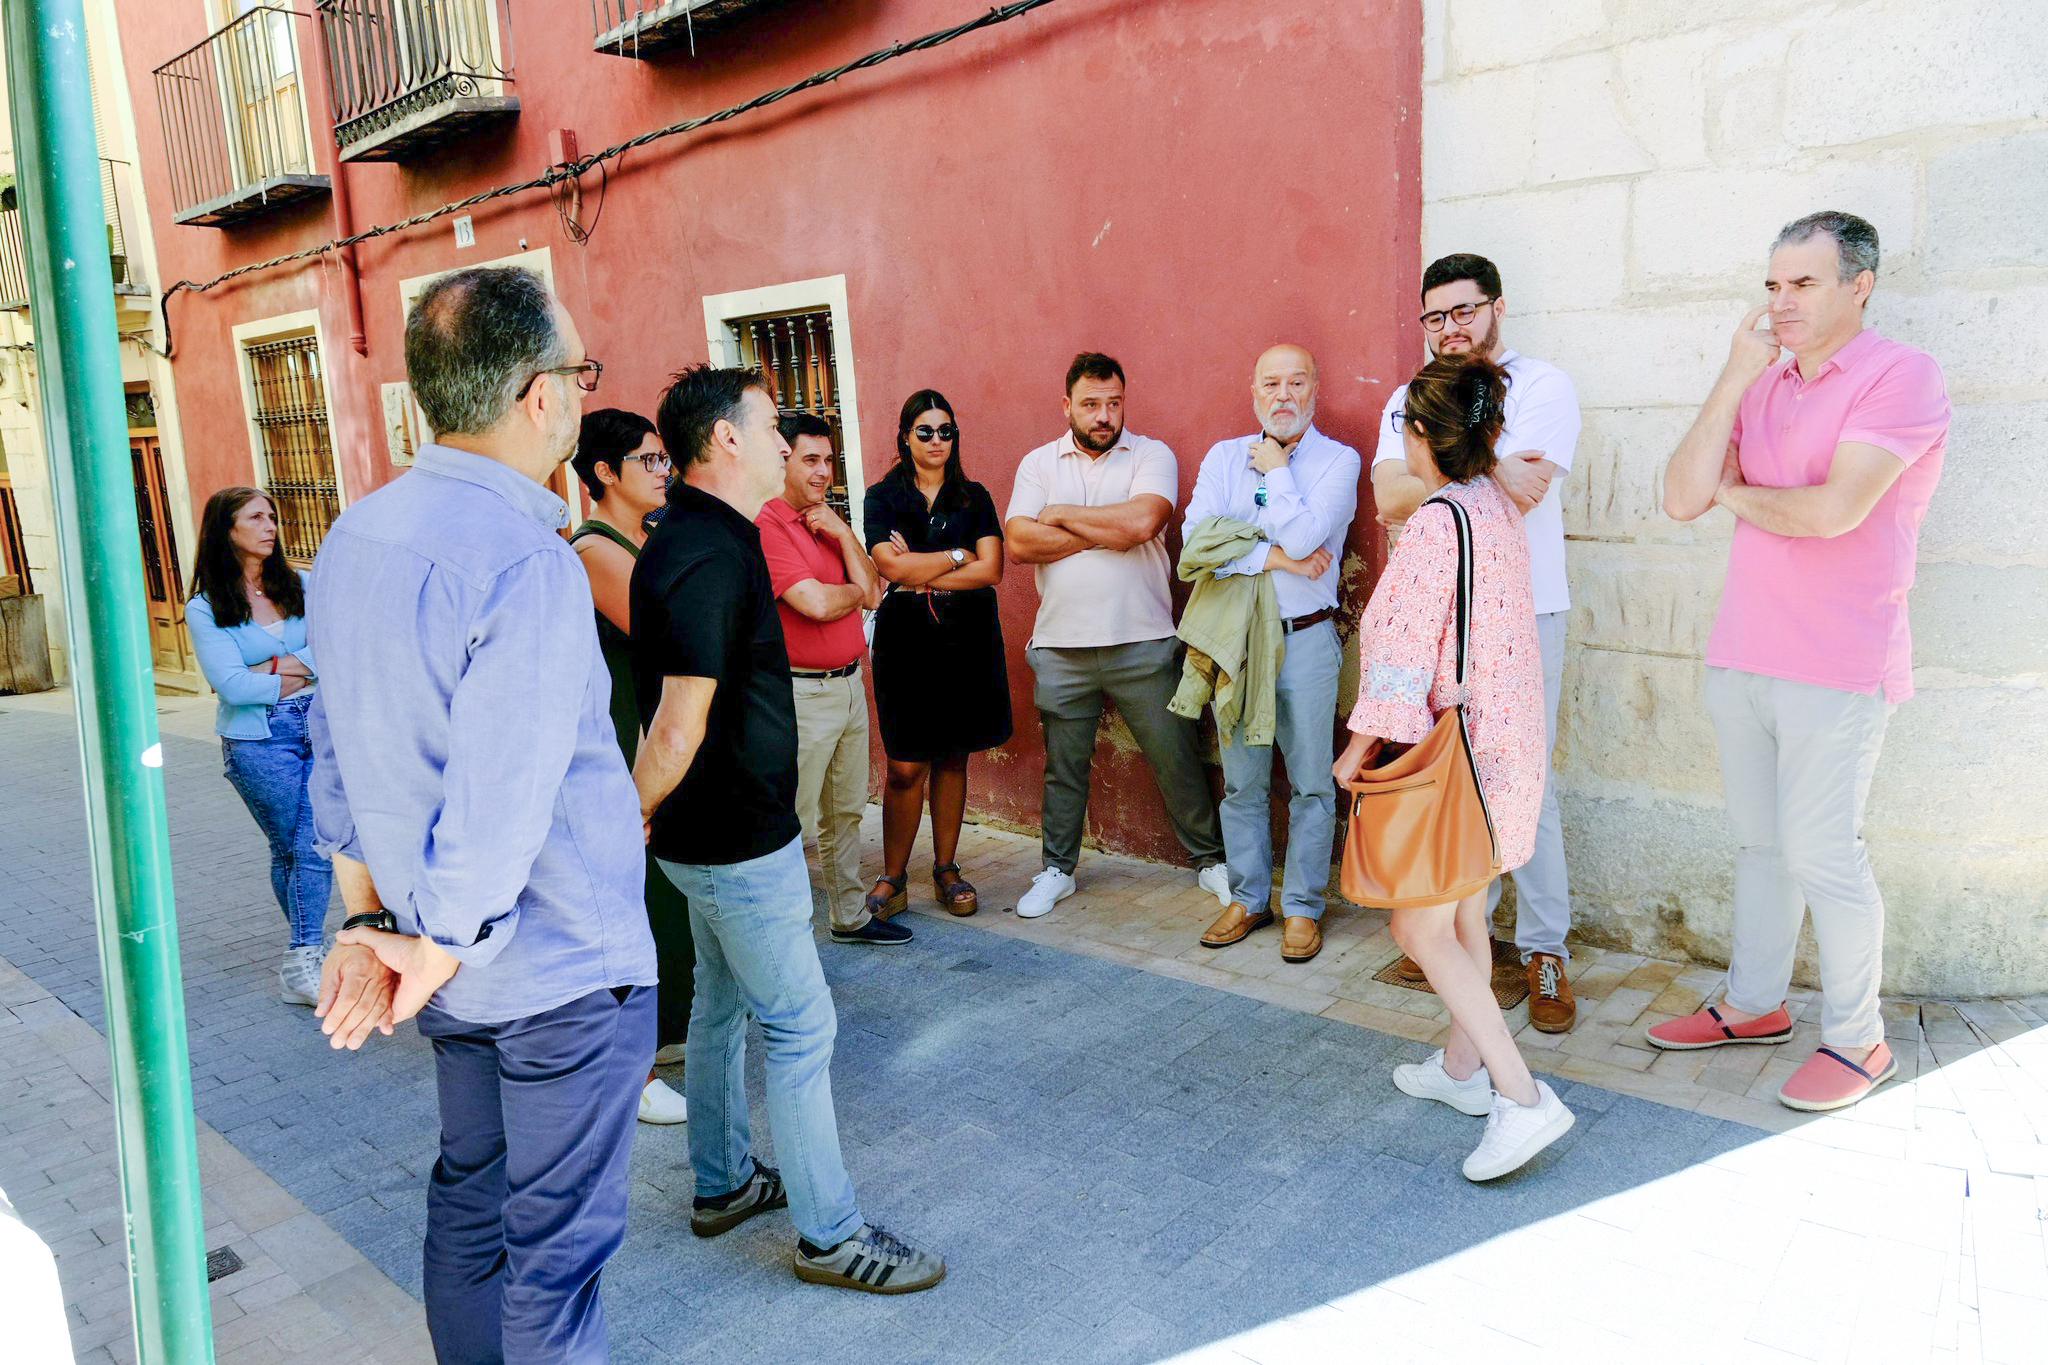 Un paseo por la Vila acerca el estado del barrio a los partidos políticos El Periódico de Ontinyent - Noticias en Ontinyent